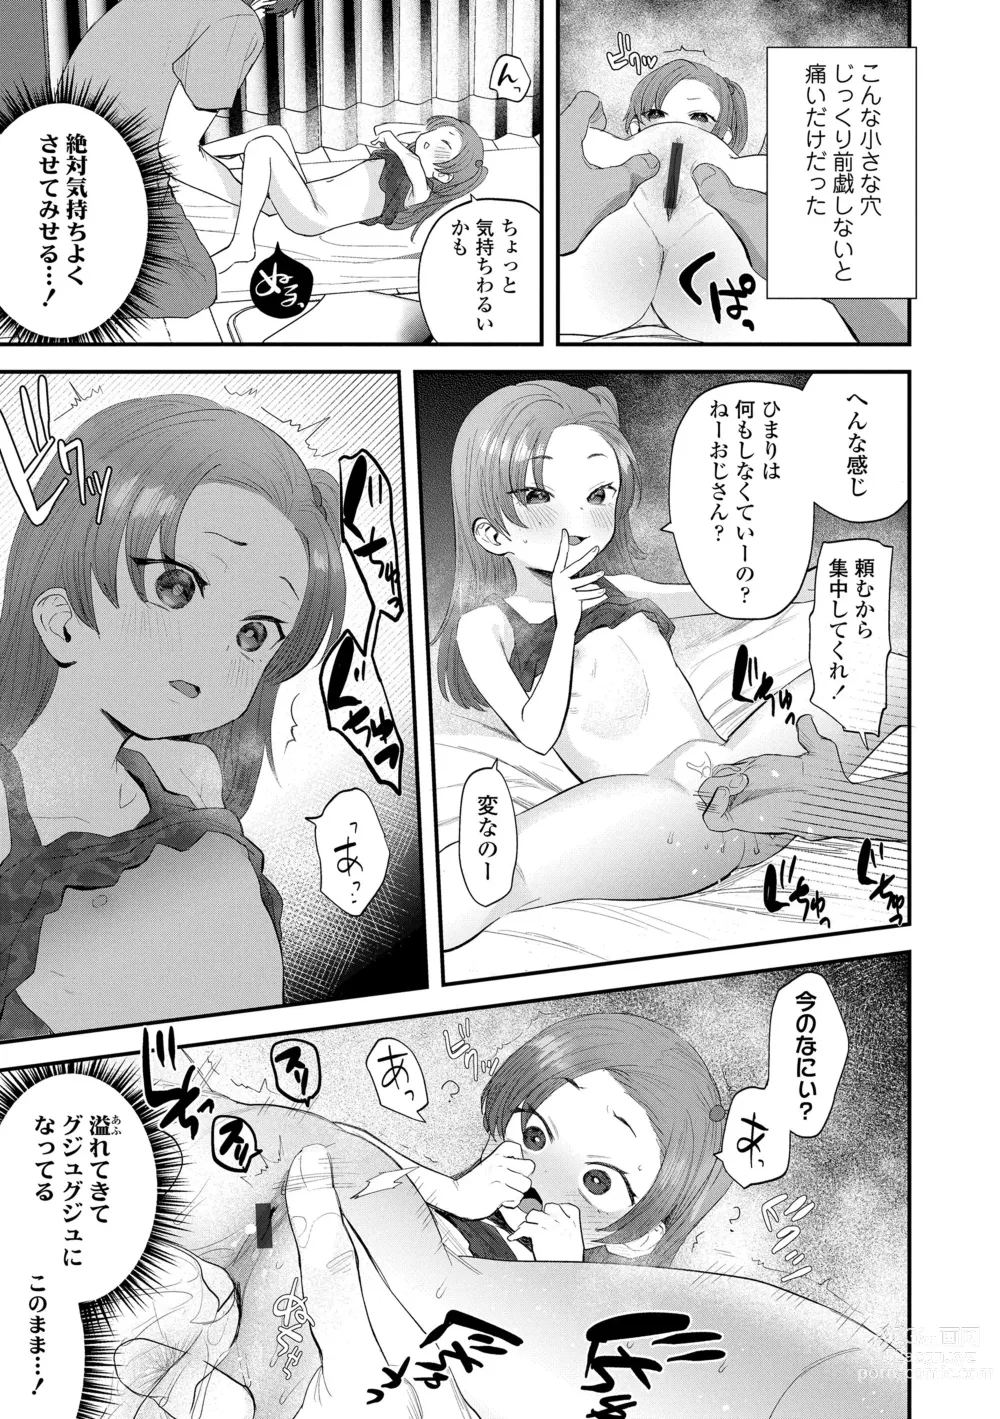 Page 11 of manga Chisanakonokoi